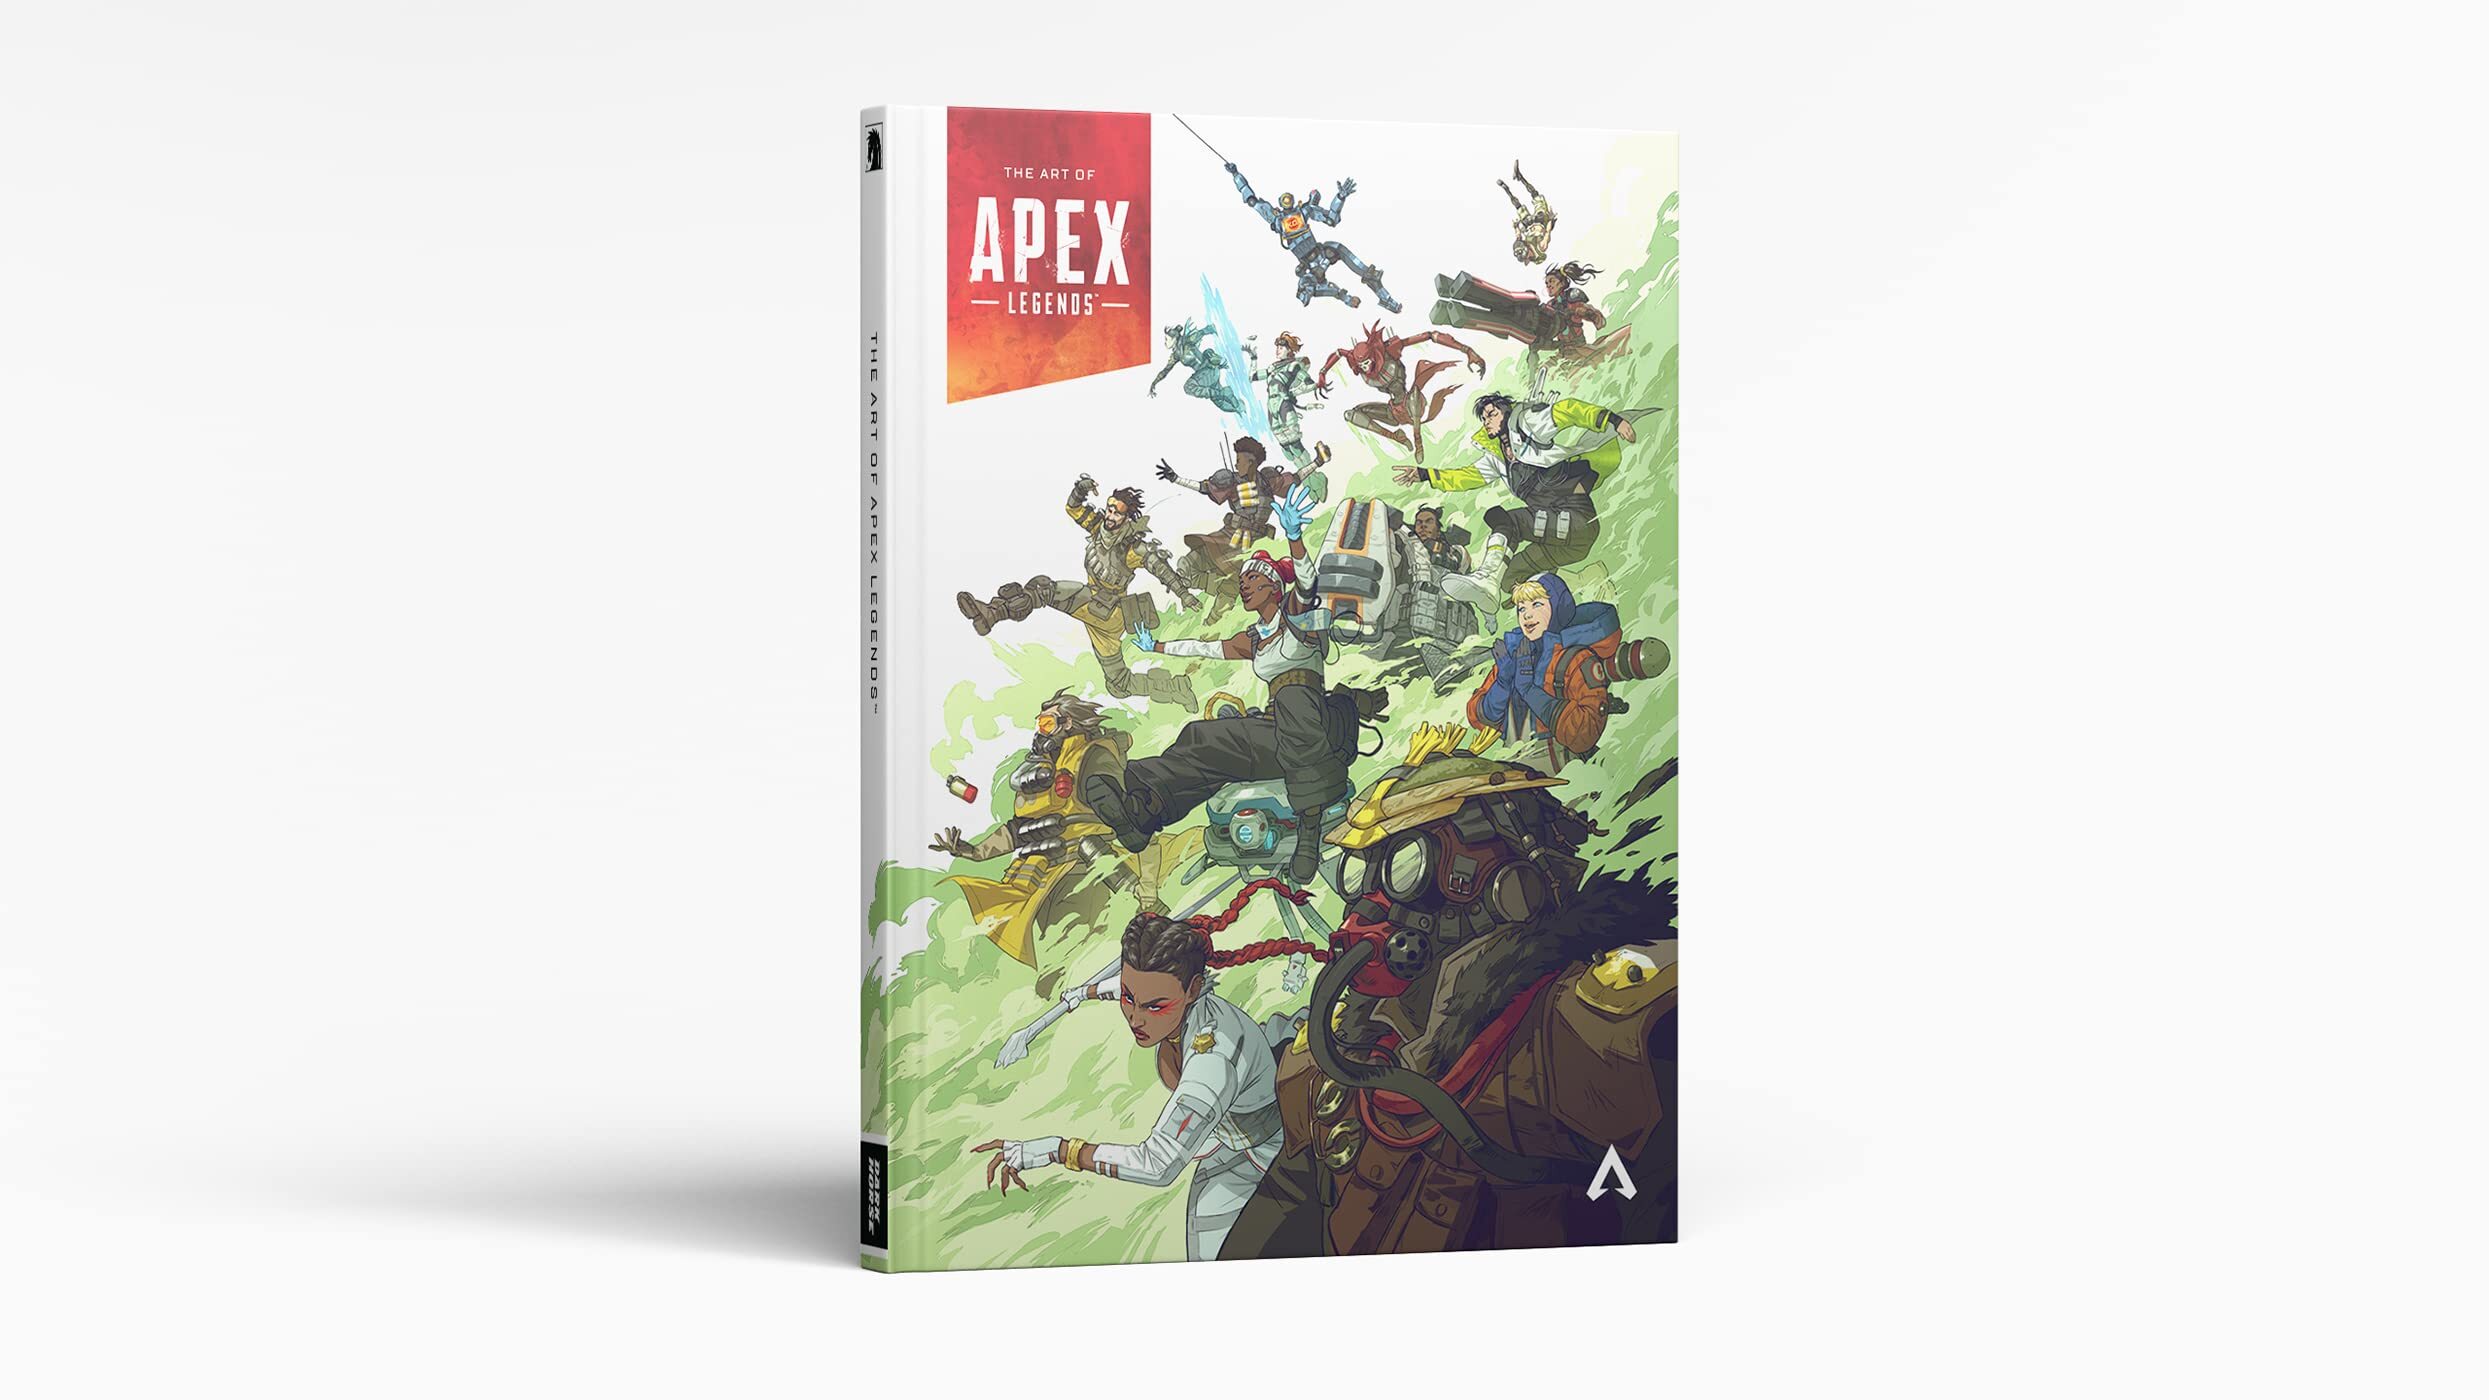 揭秘傳奇背後的故事 《Apex英雄》官方設定集今日發售